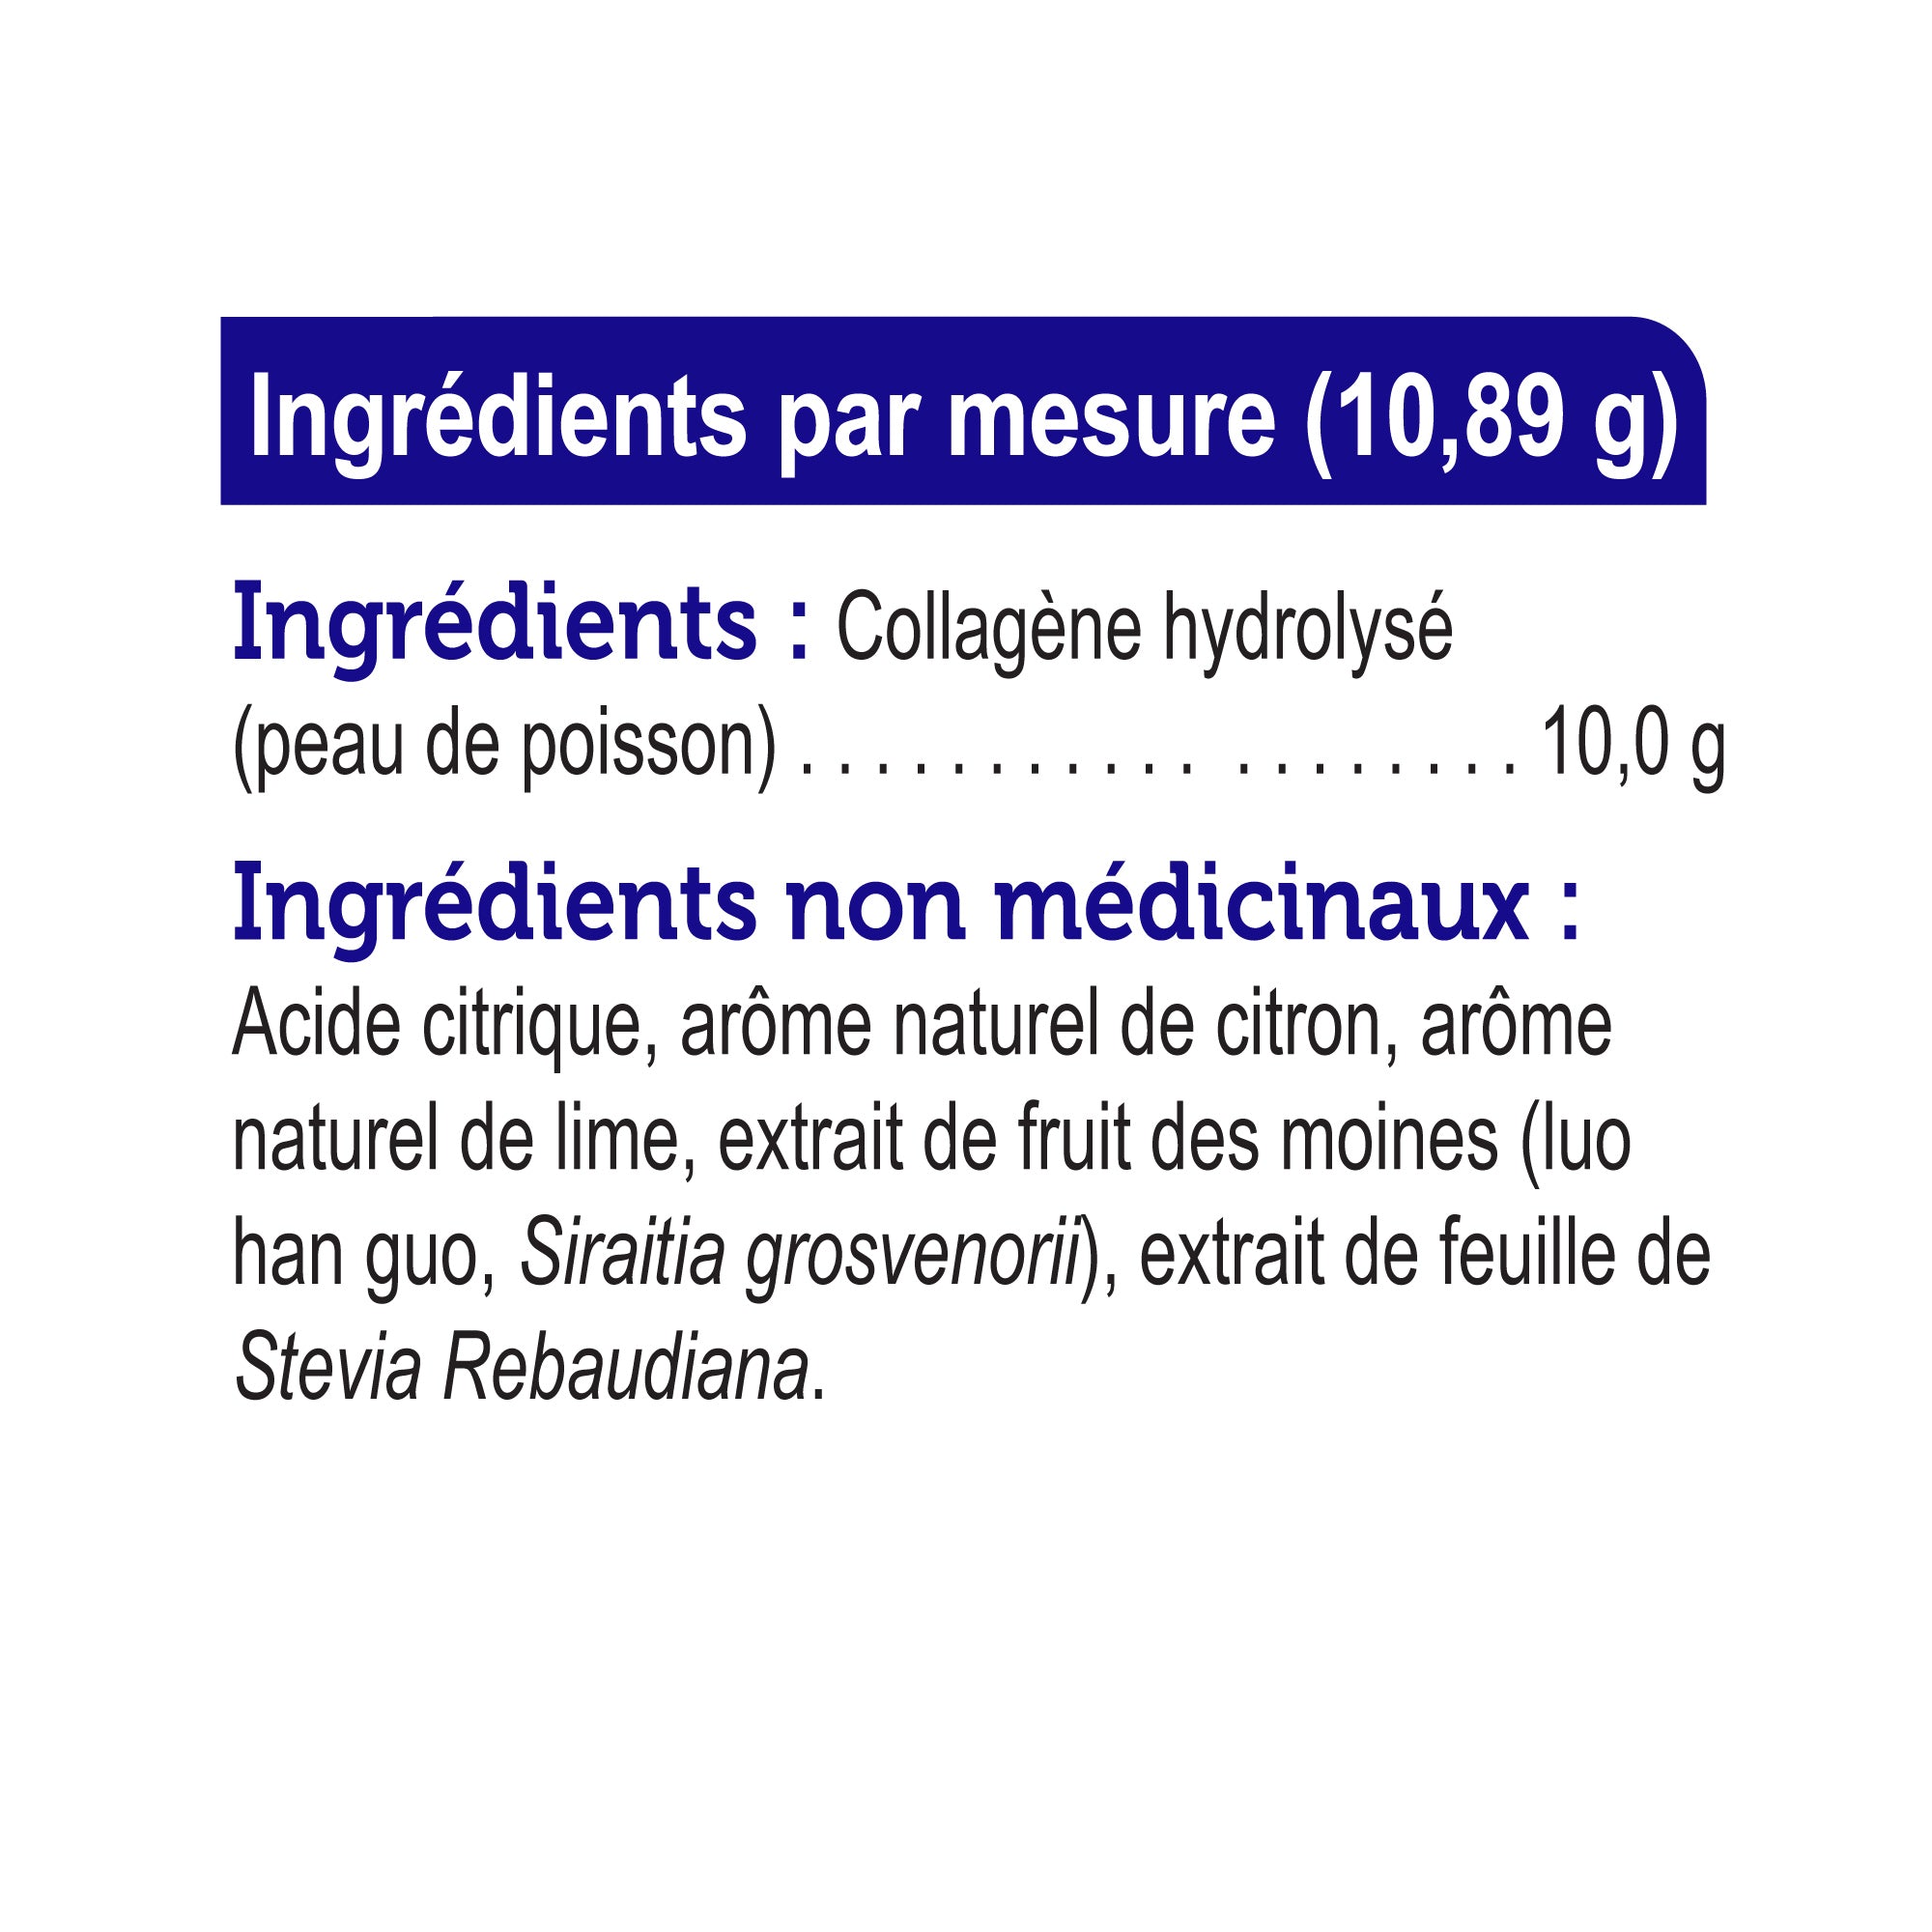 Genuine Health Marine Collagen (Flavour Options)